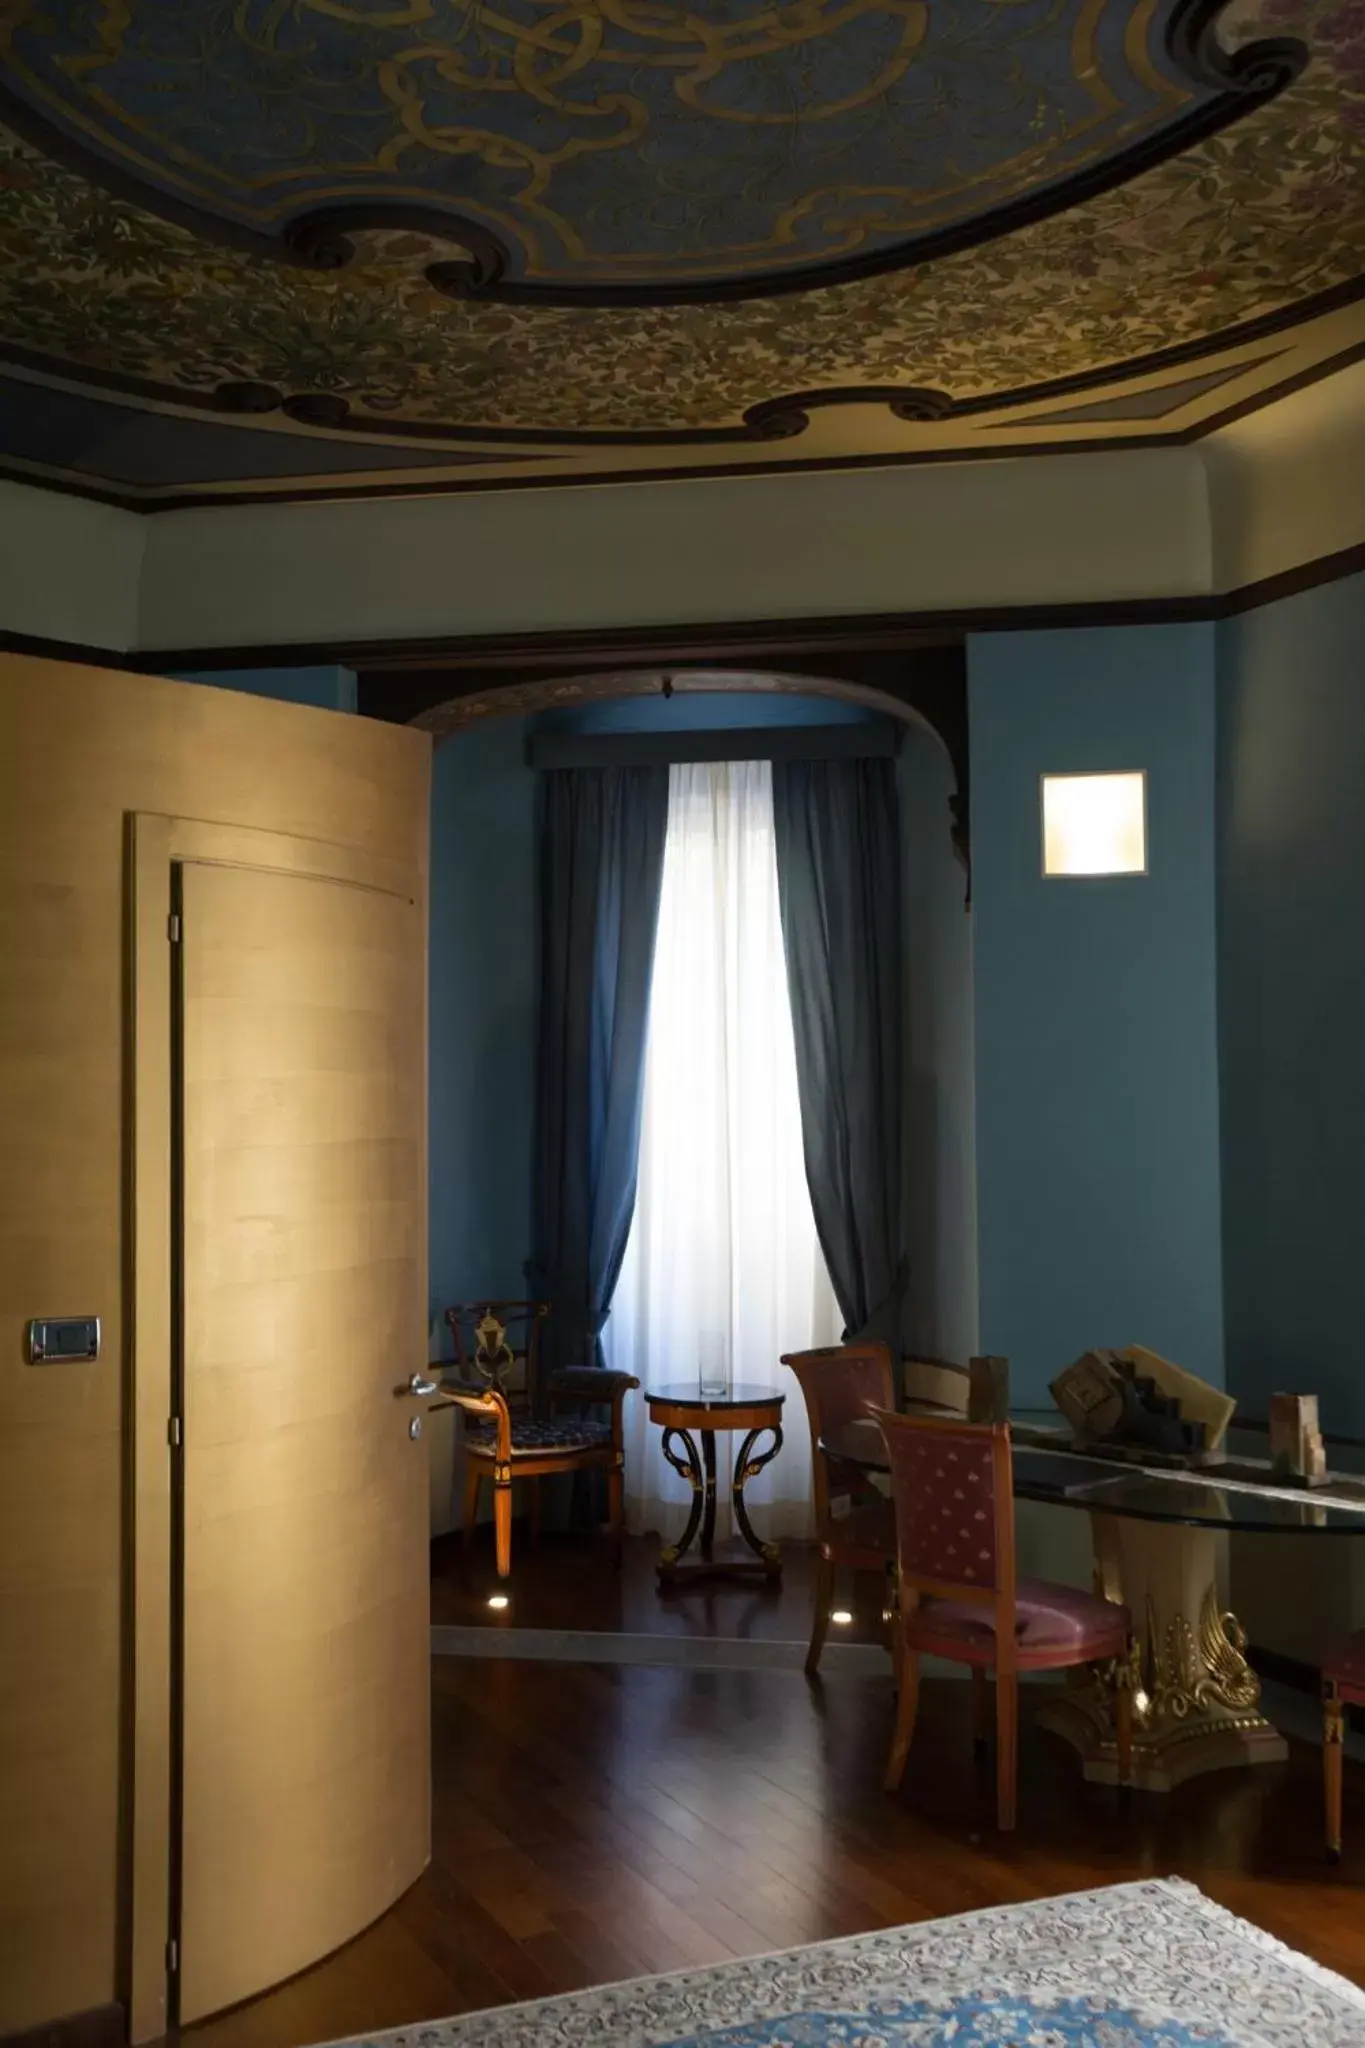 Decorative detail in Hotel Dei Pittori